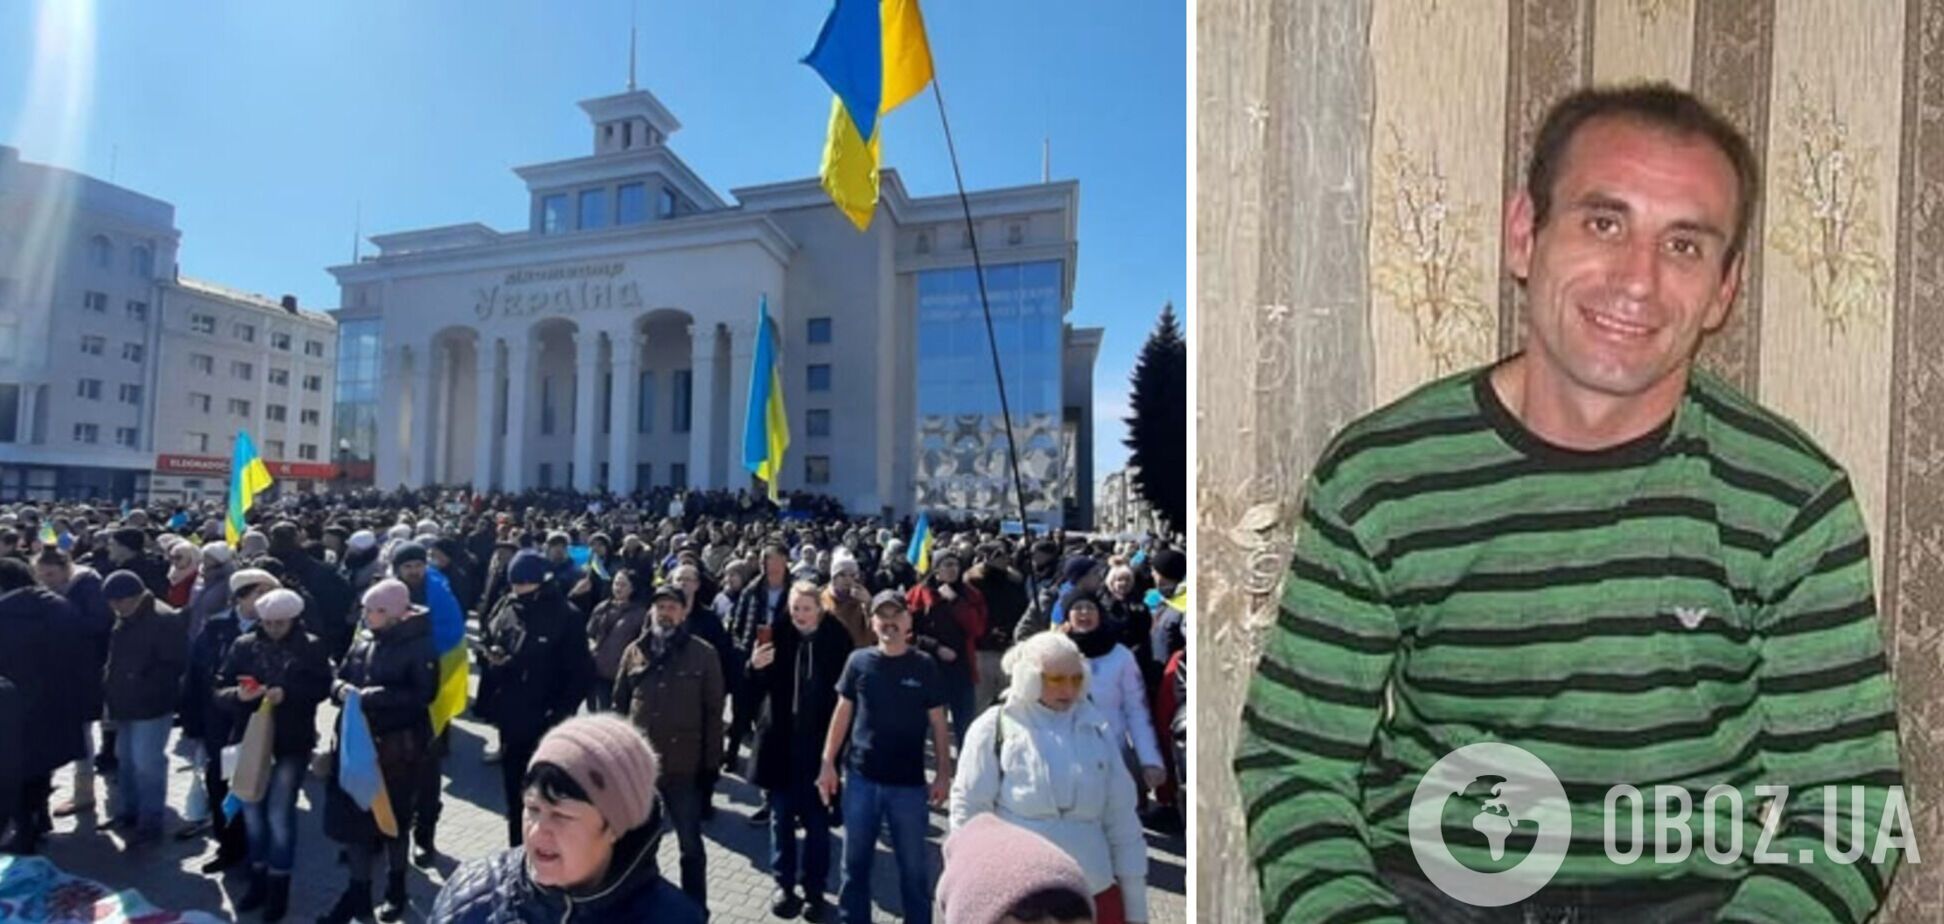 Оккупанты задержали на Херсонщине украинского активиста: мужчину увезли в неизвестном направлении. Фото